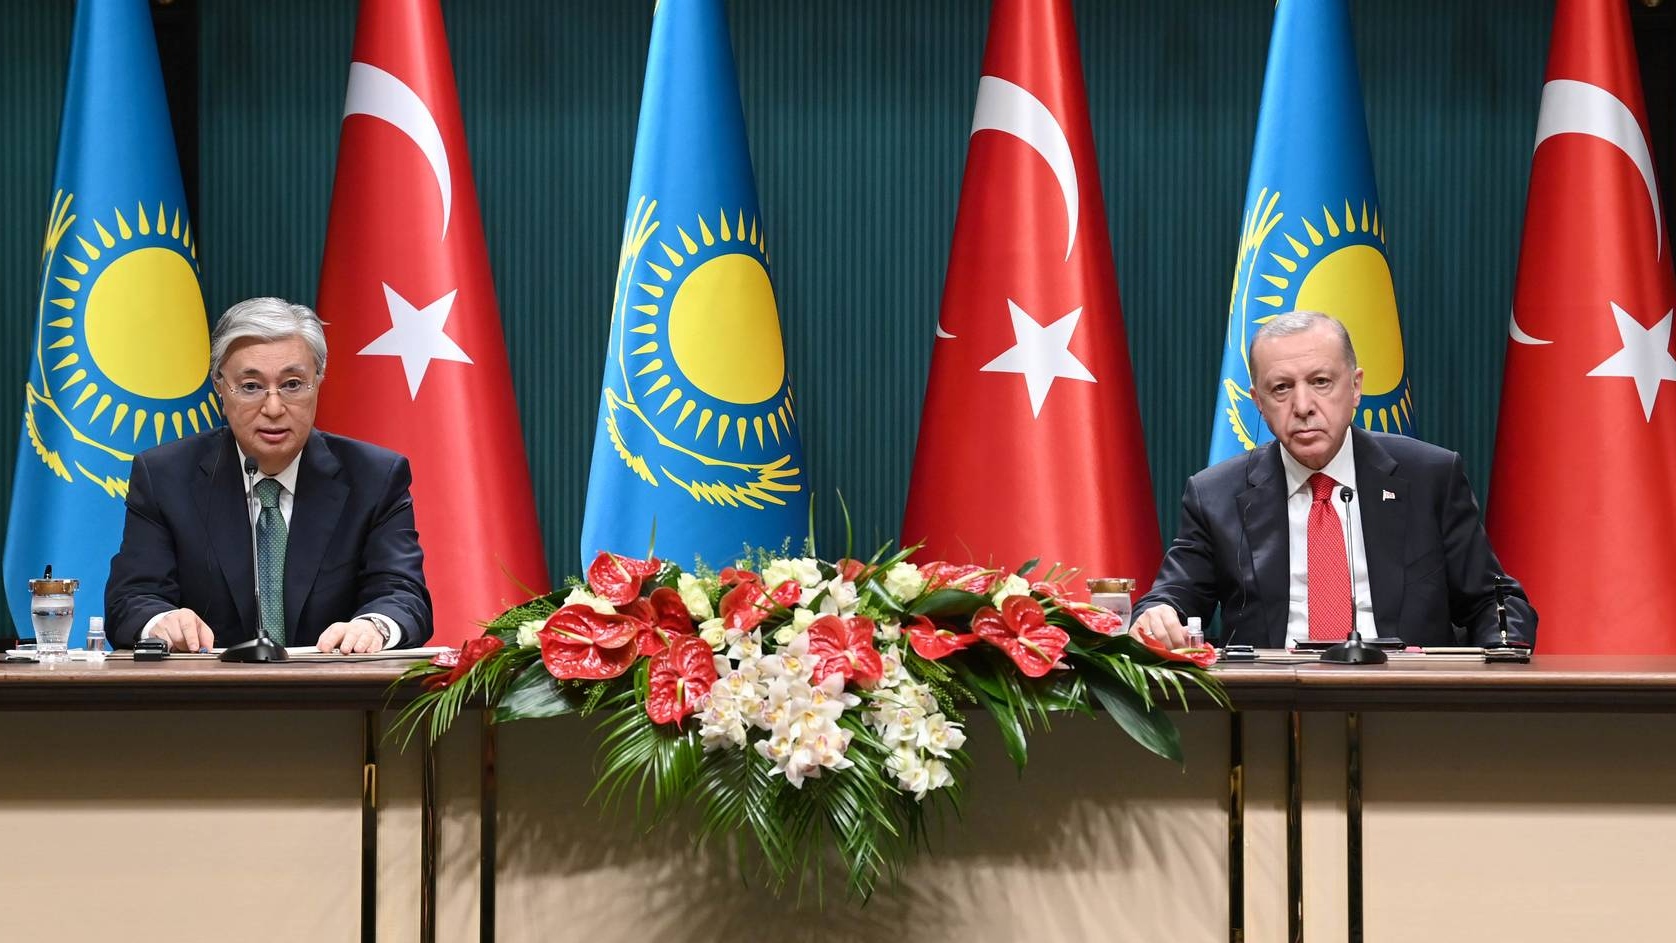 Касым-Жомарт Токаев и Реджеп Тайип Эрдоган на брифинге для представителей СМИ 11 мая 2022 года в Анкаре.